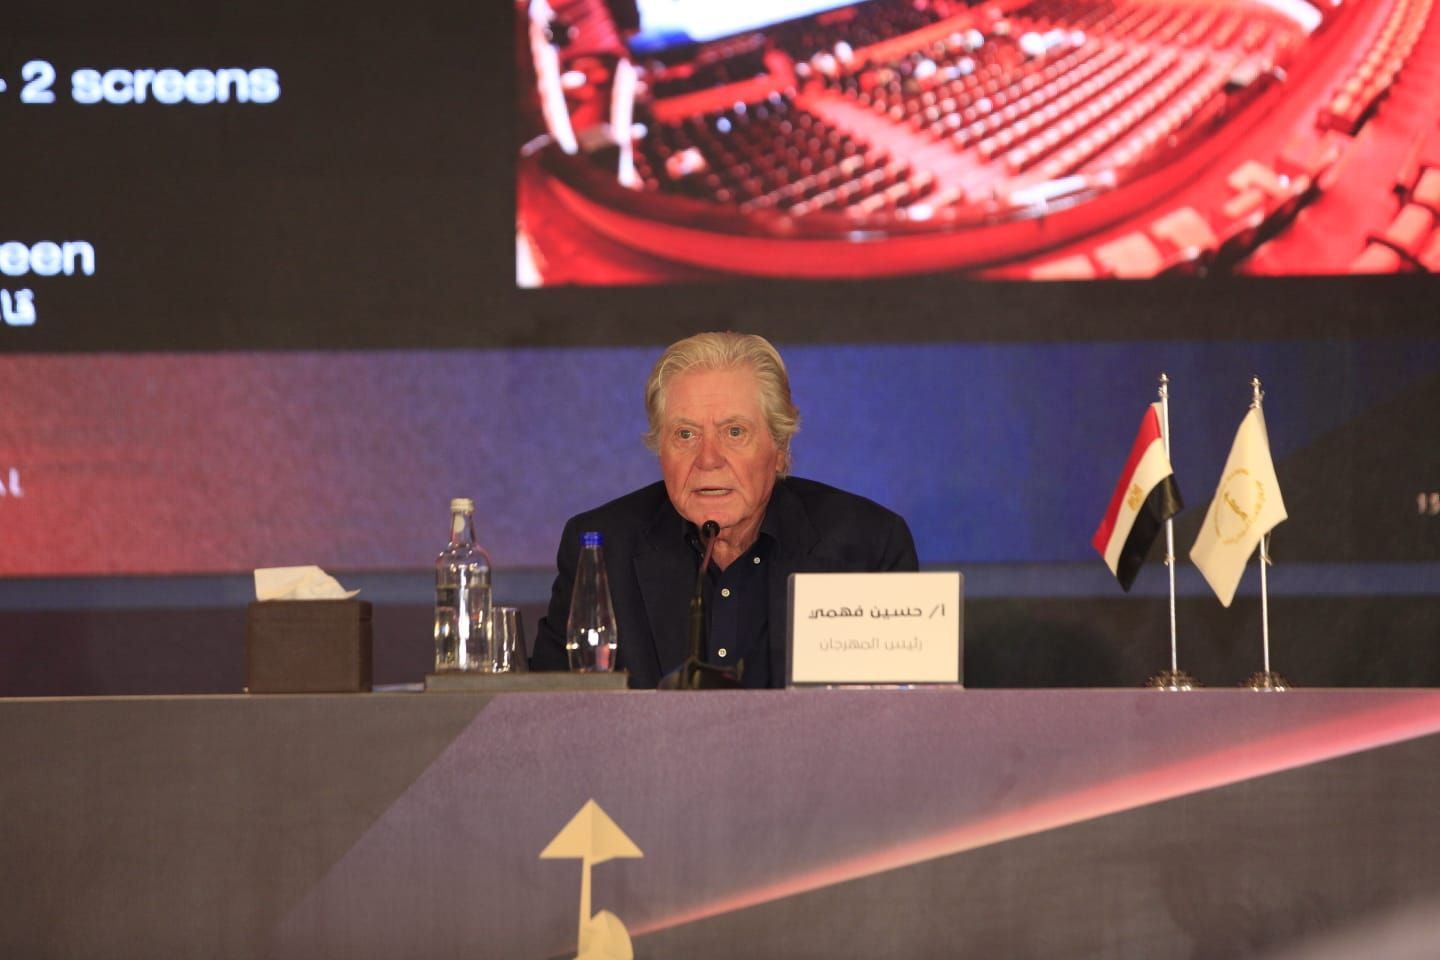 رئيس مهرجان القاهرة السينمائي حسين فهمي خلال المؤتمر الصحفي - 18 أكتوبر 2022 - المكتب الإعلامي للمهرجان